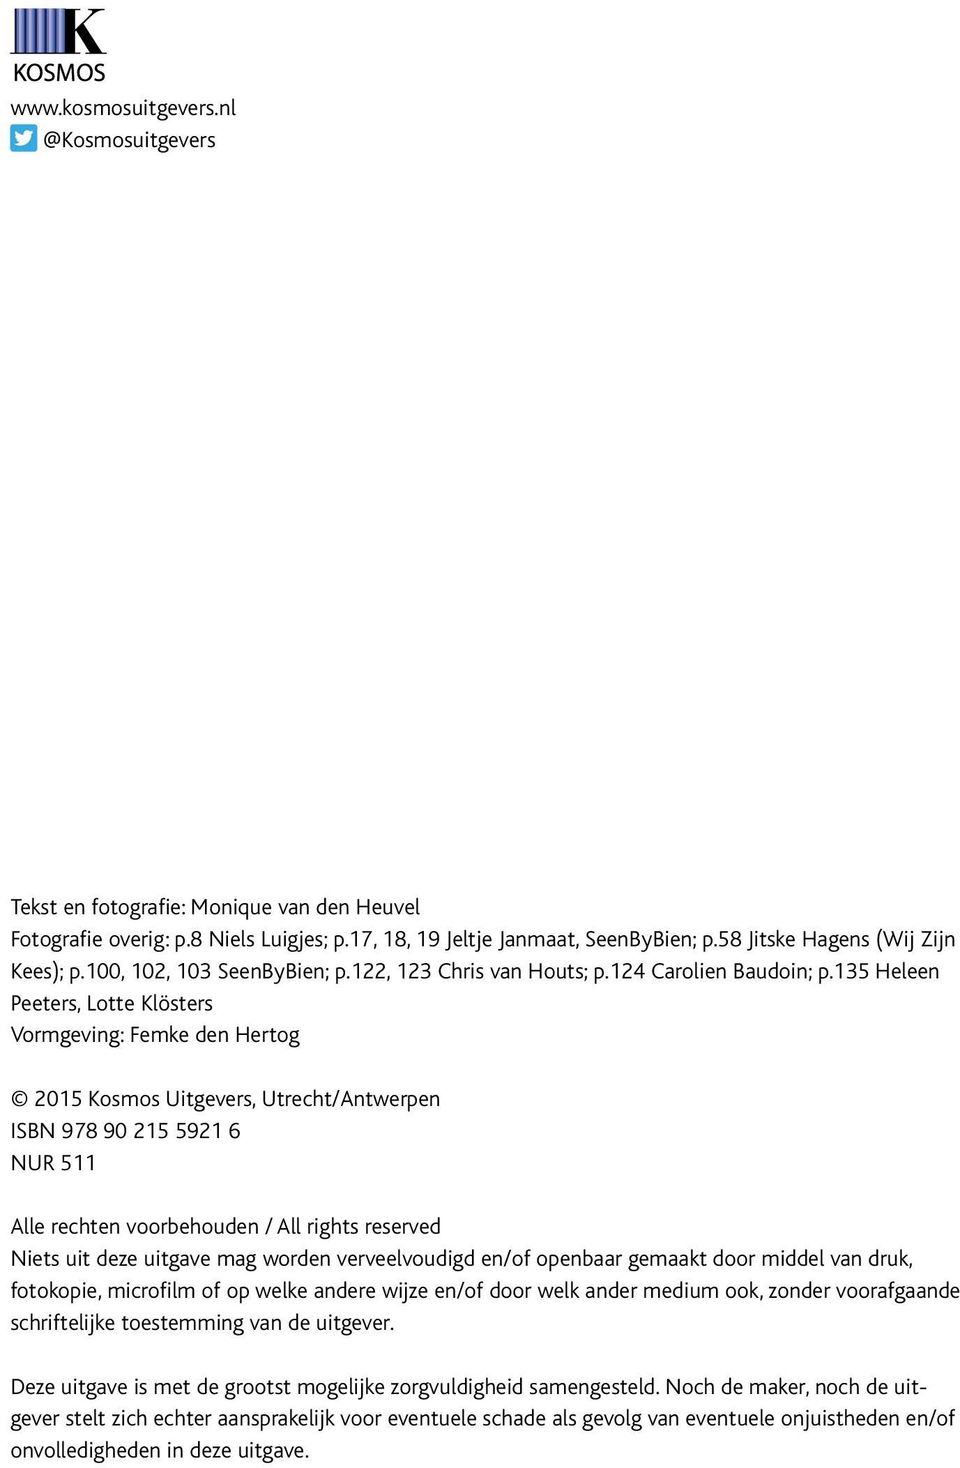 135 Heleen Peeters, Lotte Klösters Vormgeving: Femke den Hertog 2015 Kosmos Uitgevers, Utrecht/Antwerpen ISBN 978 90 215 5921 6 NUR 511 Alle rechten voorbehouden / All rights reserved Niets uit deze